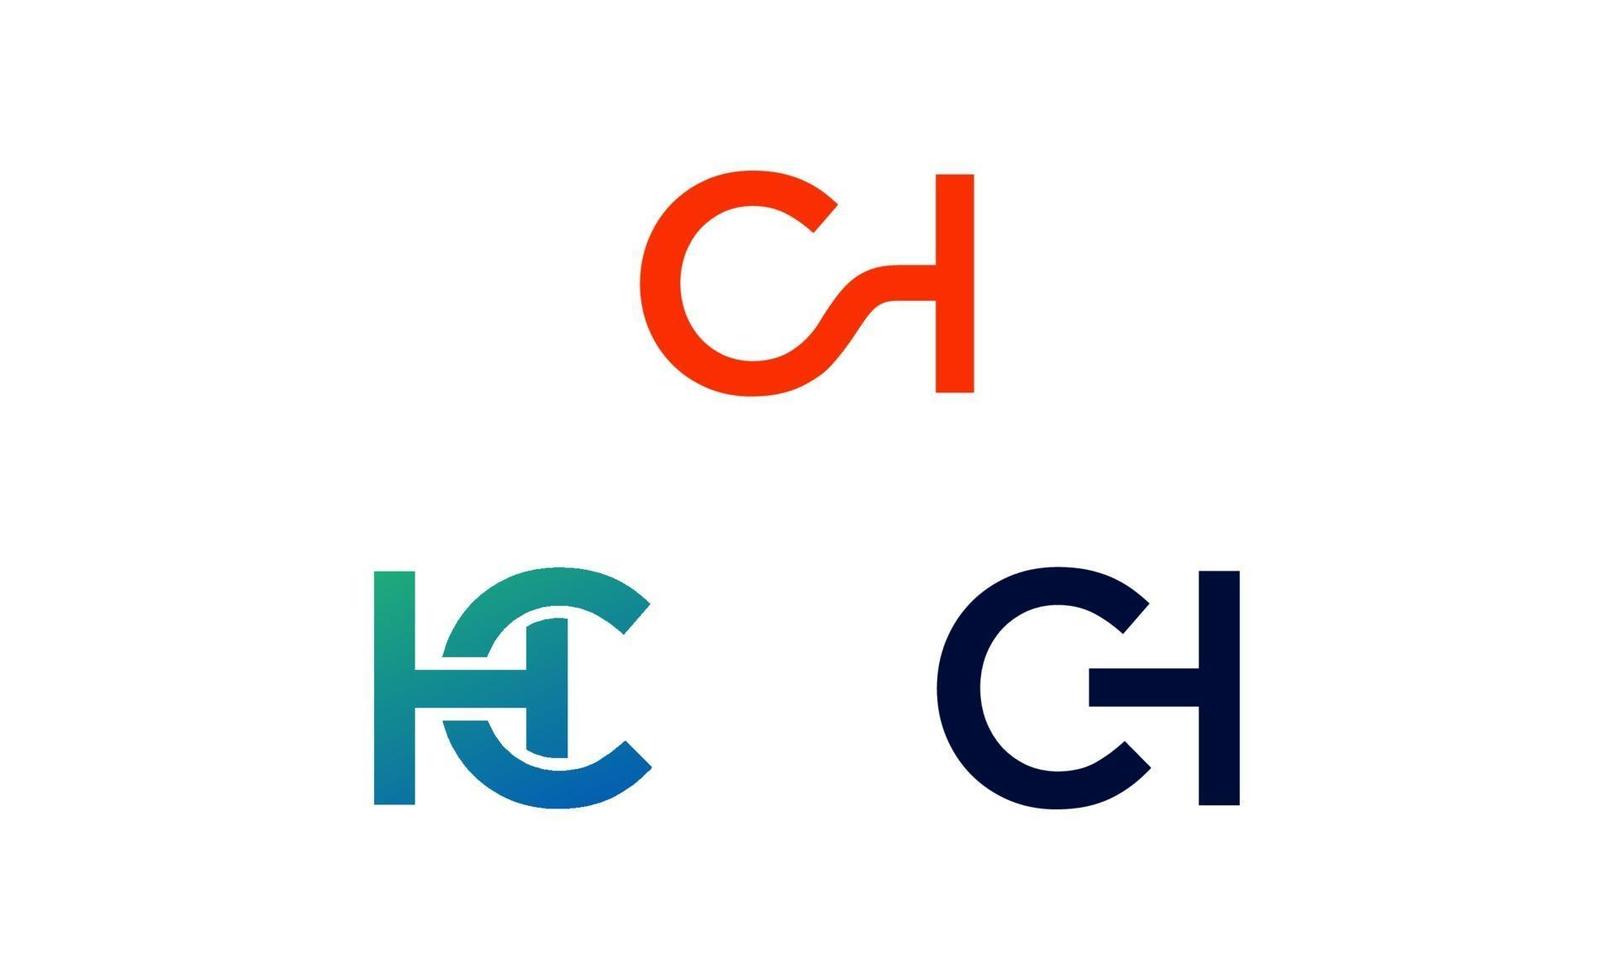 ch inicial, hc, vector de plantilla de diseño de logotipo